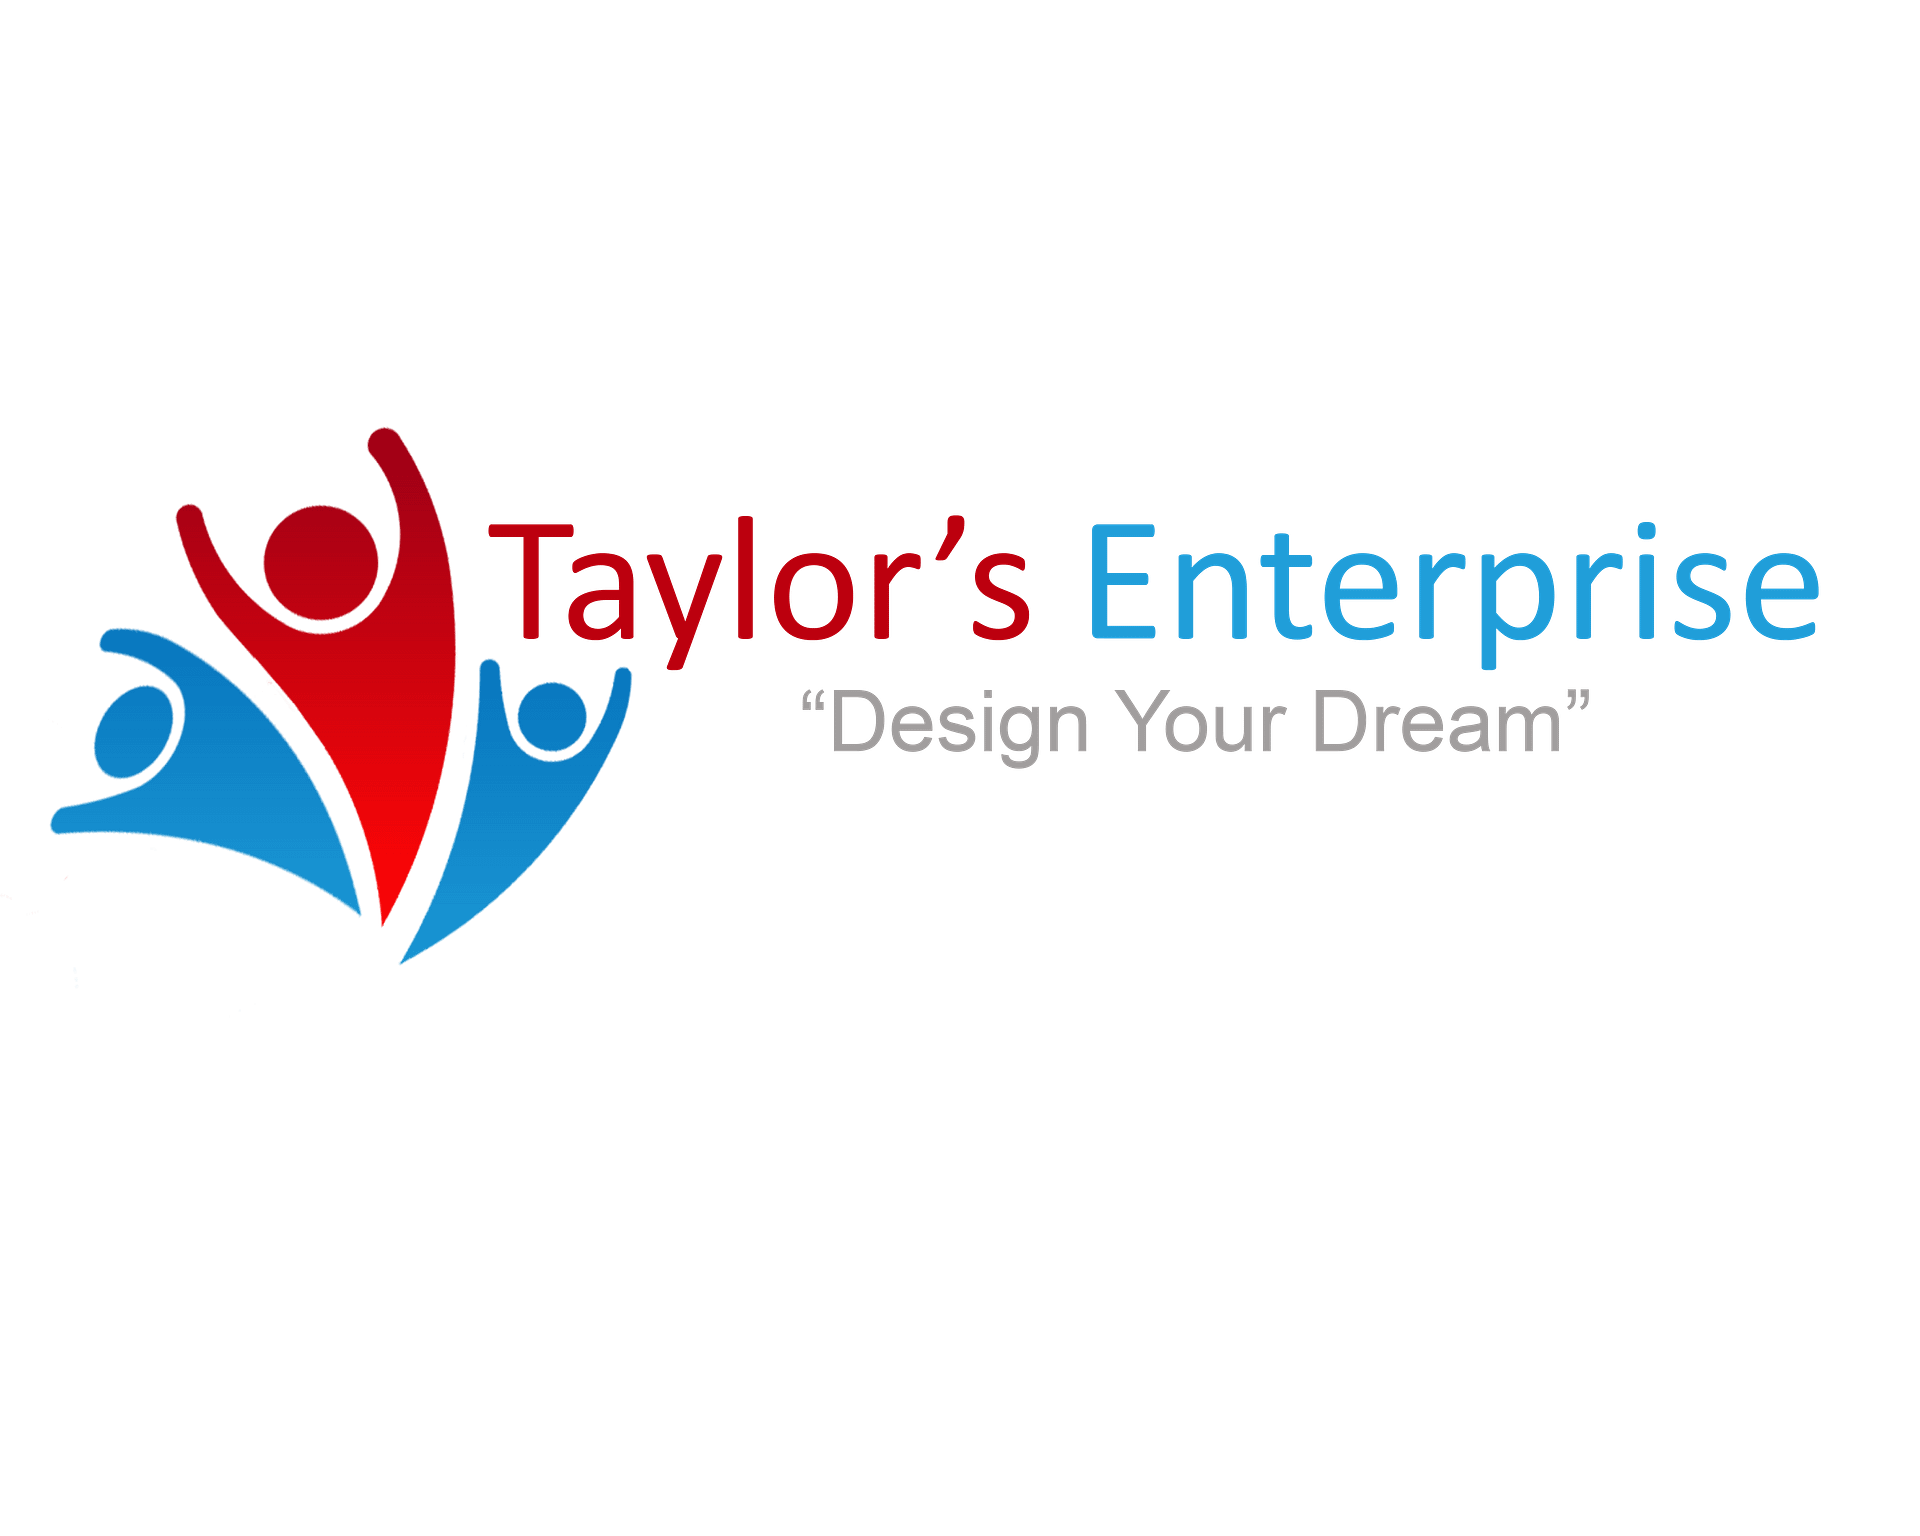 Taylor’s Enterprise